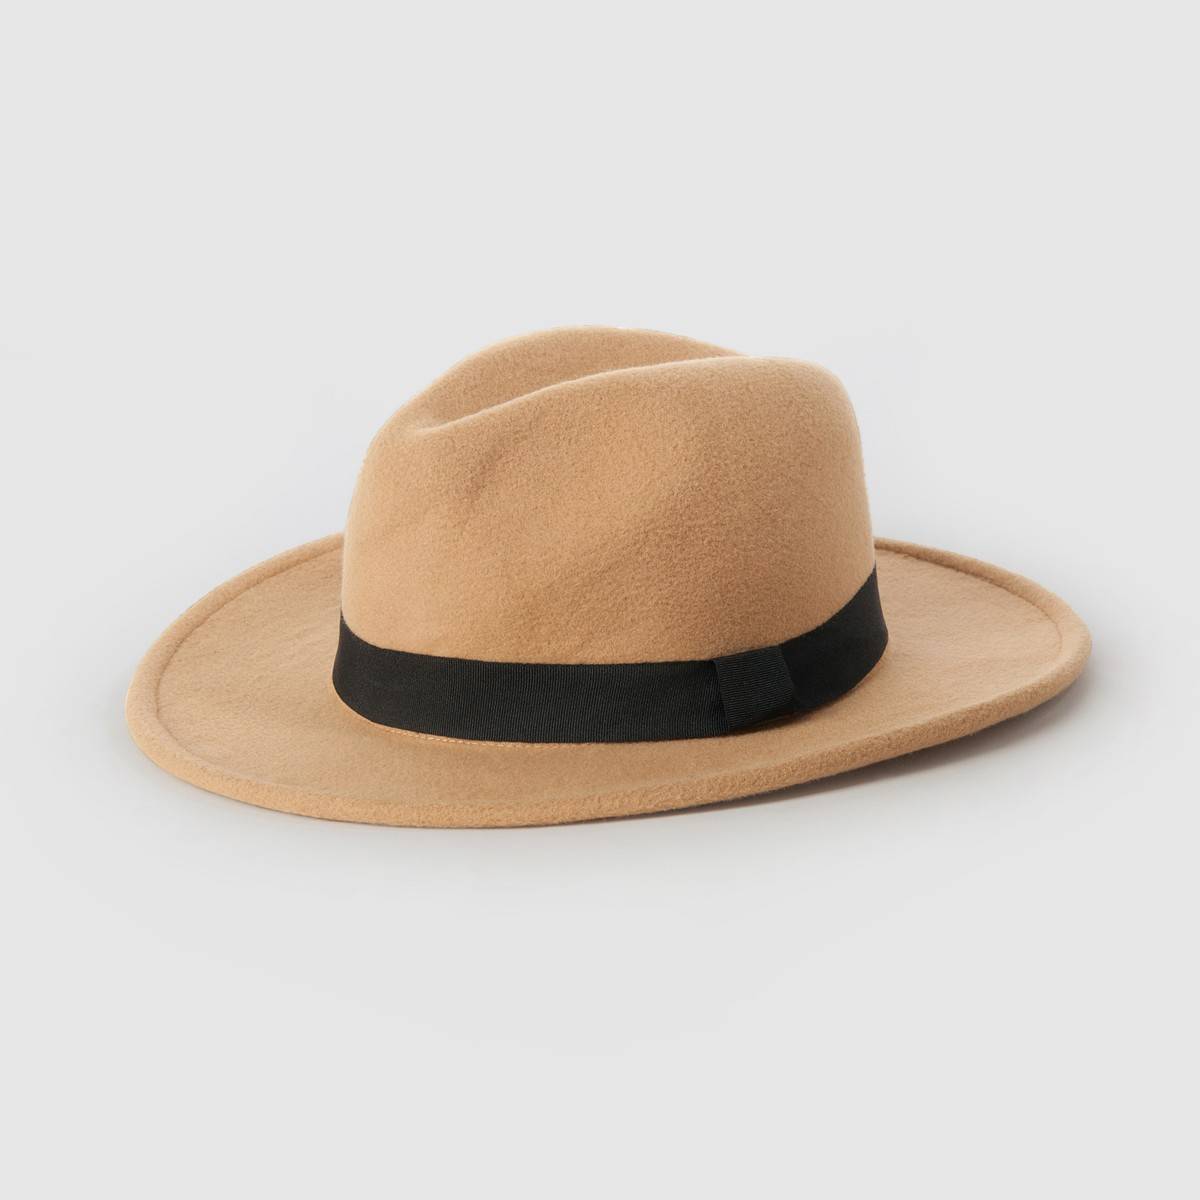 La hat. L В шляпе. Шляпа из Бифри.